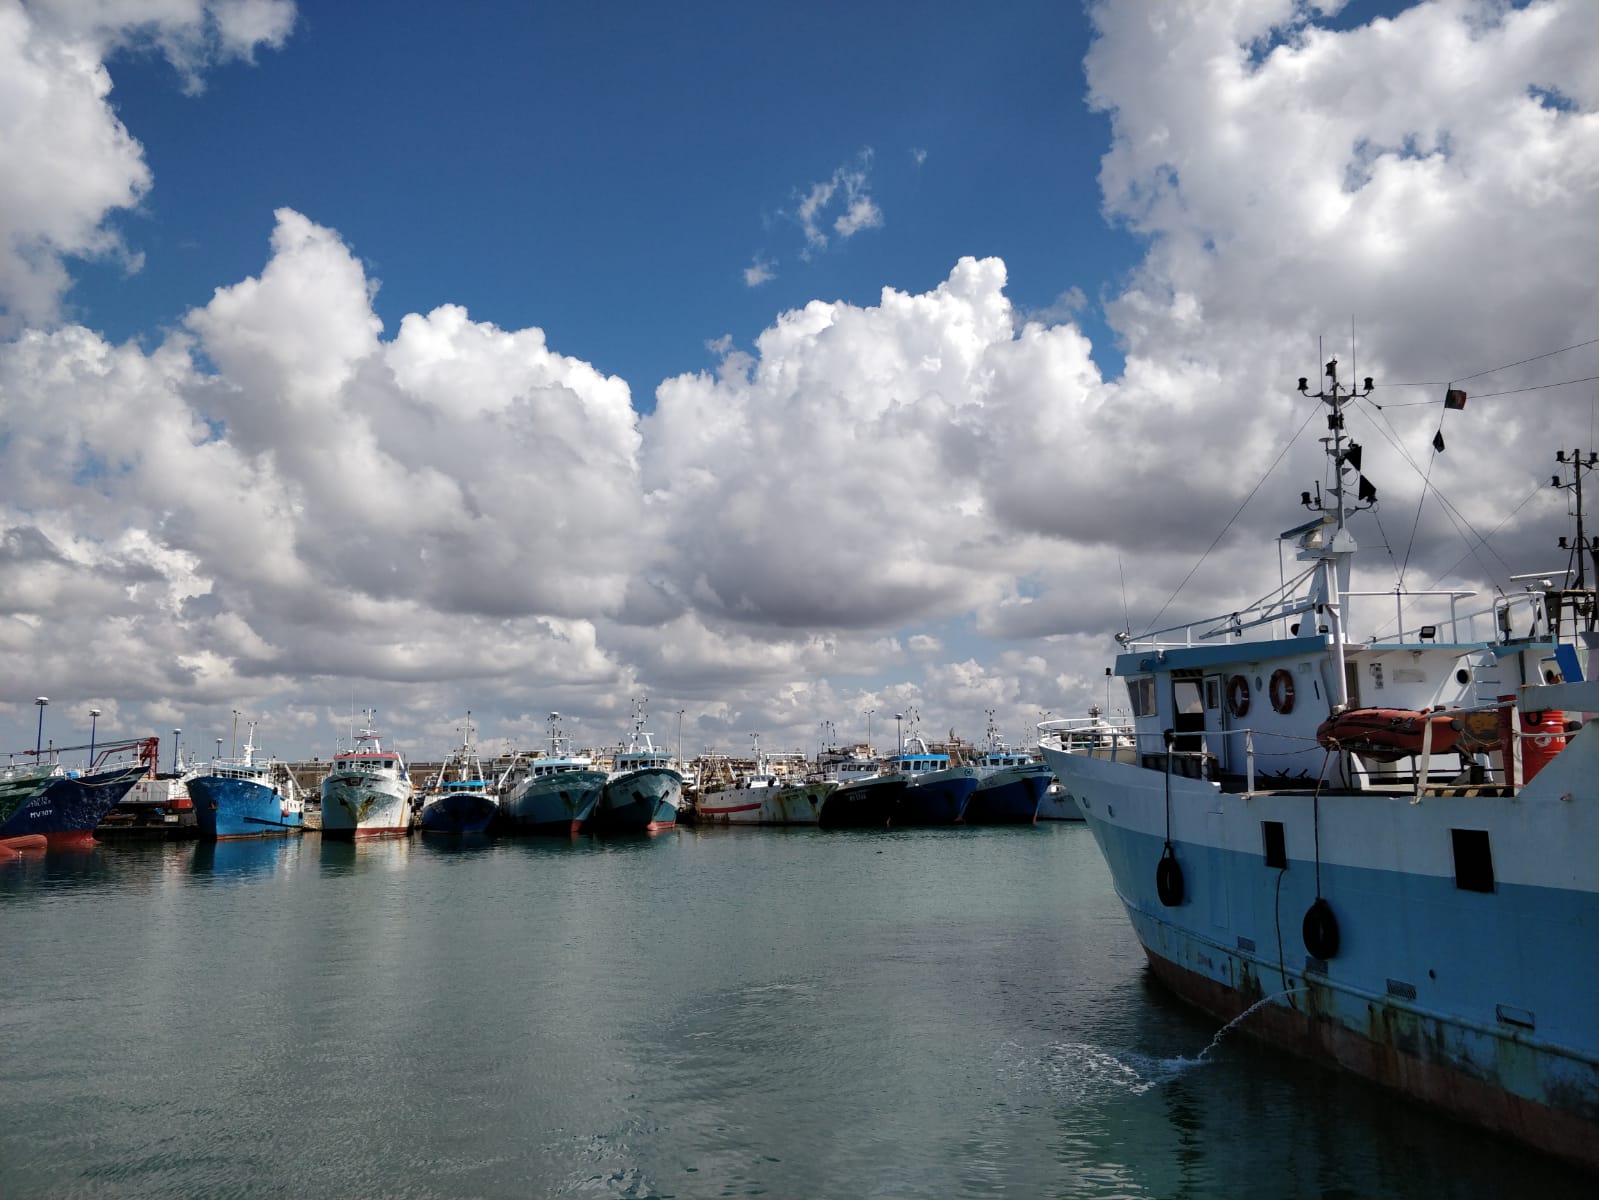 Regione Sicilia: Ecco i bandi che prevedono le risorse per il settore pesca per un importo di 11 milioni e mezzo di euro